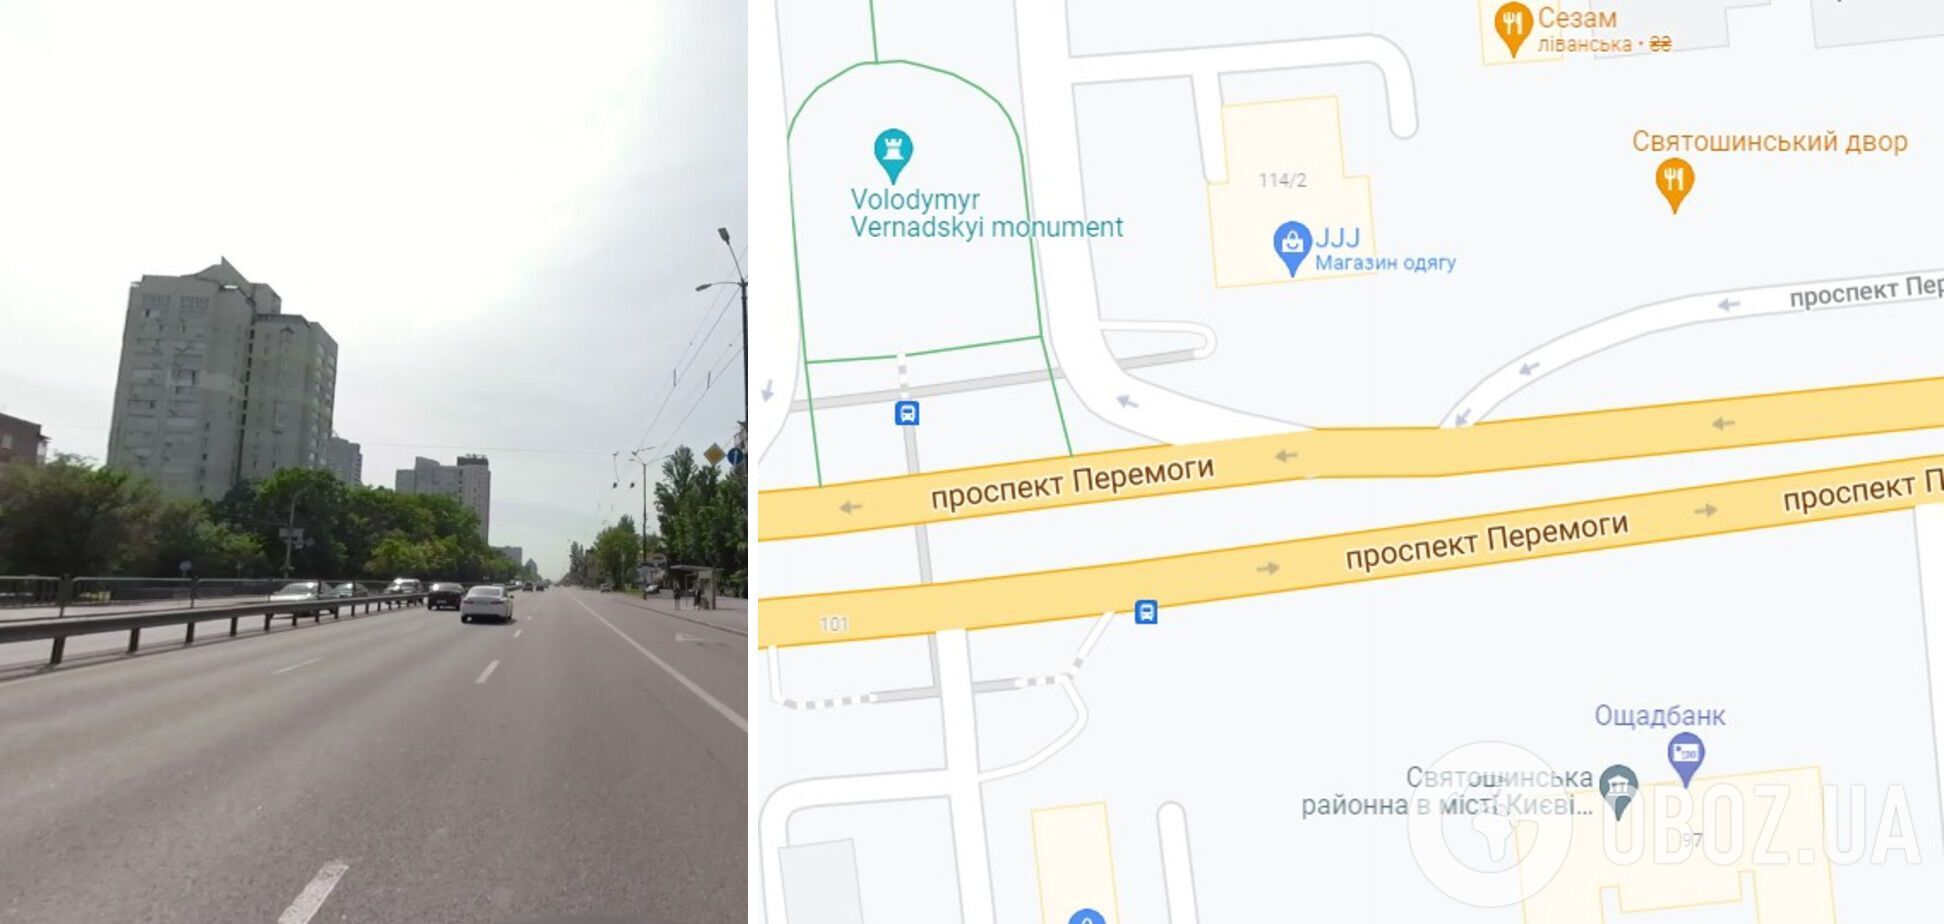 ДТП произошло на проспекте Победы в Киеве